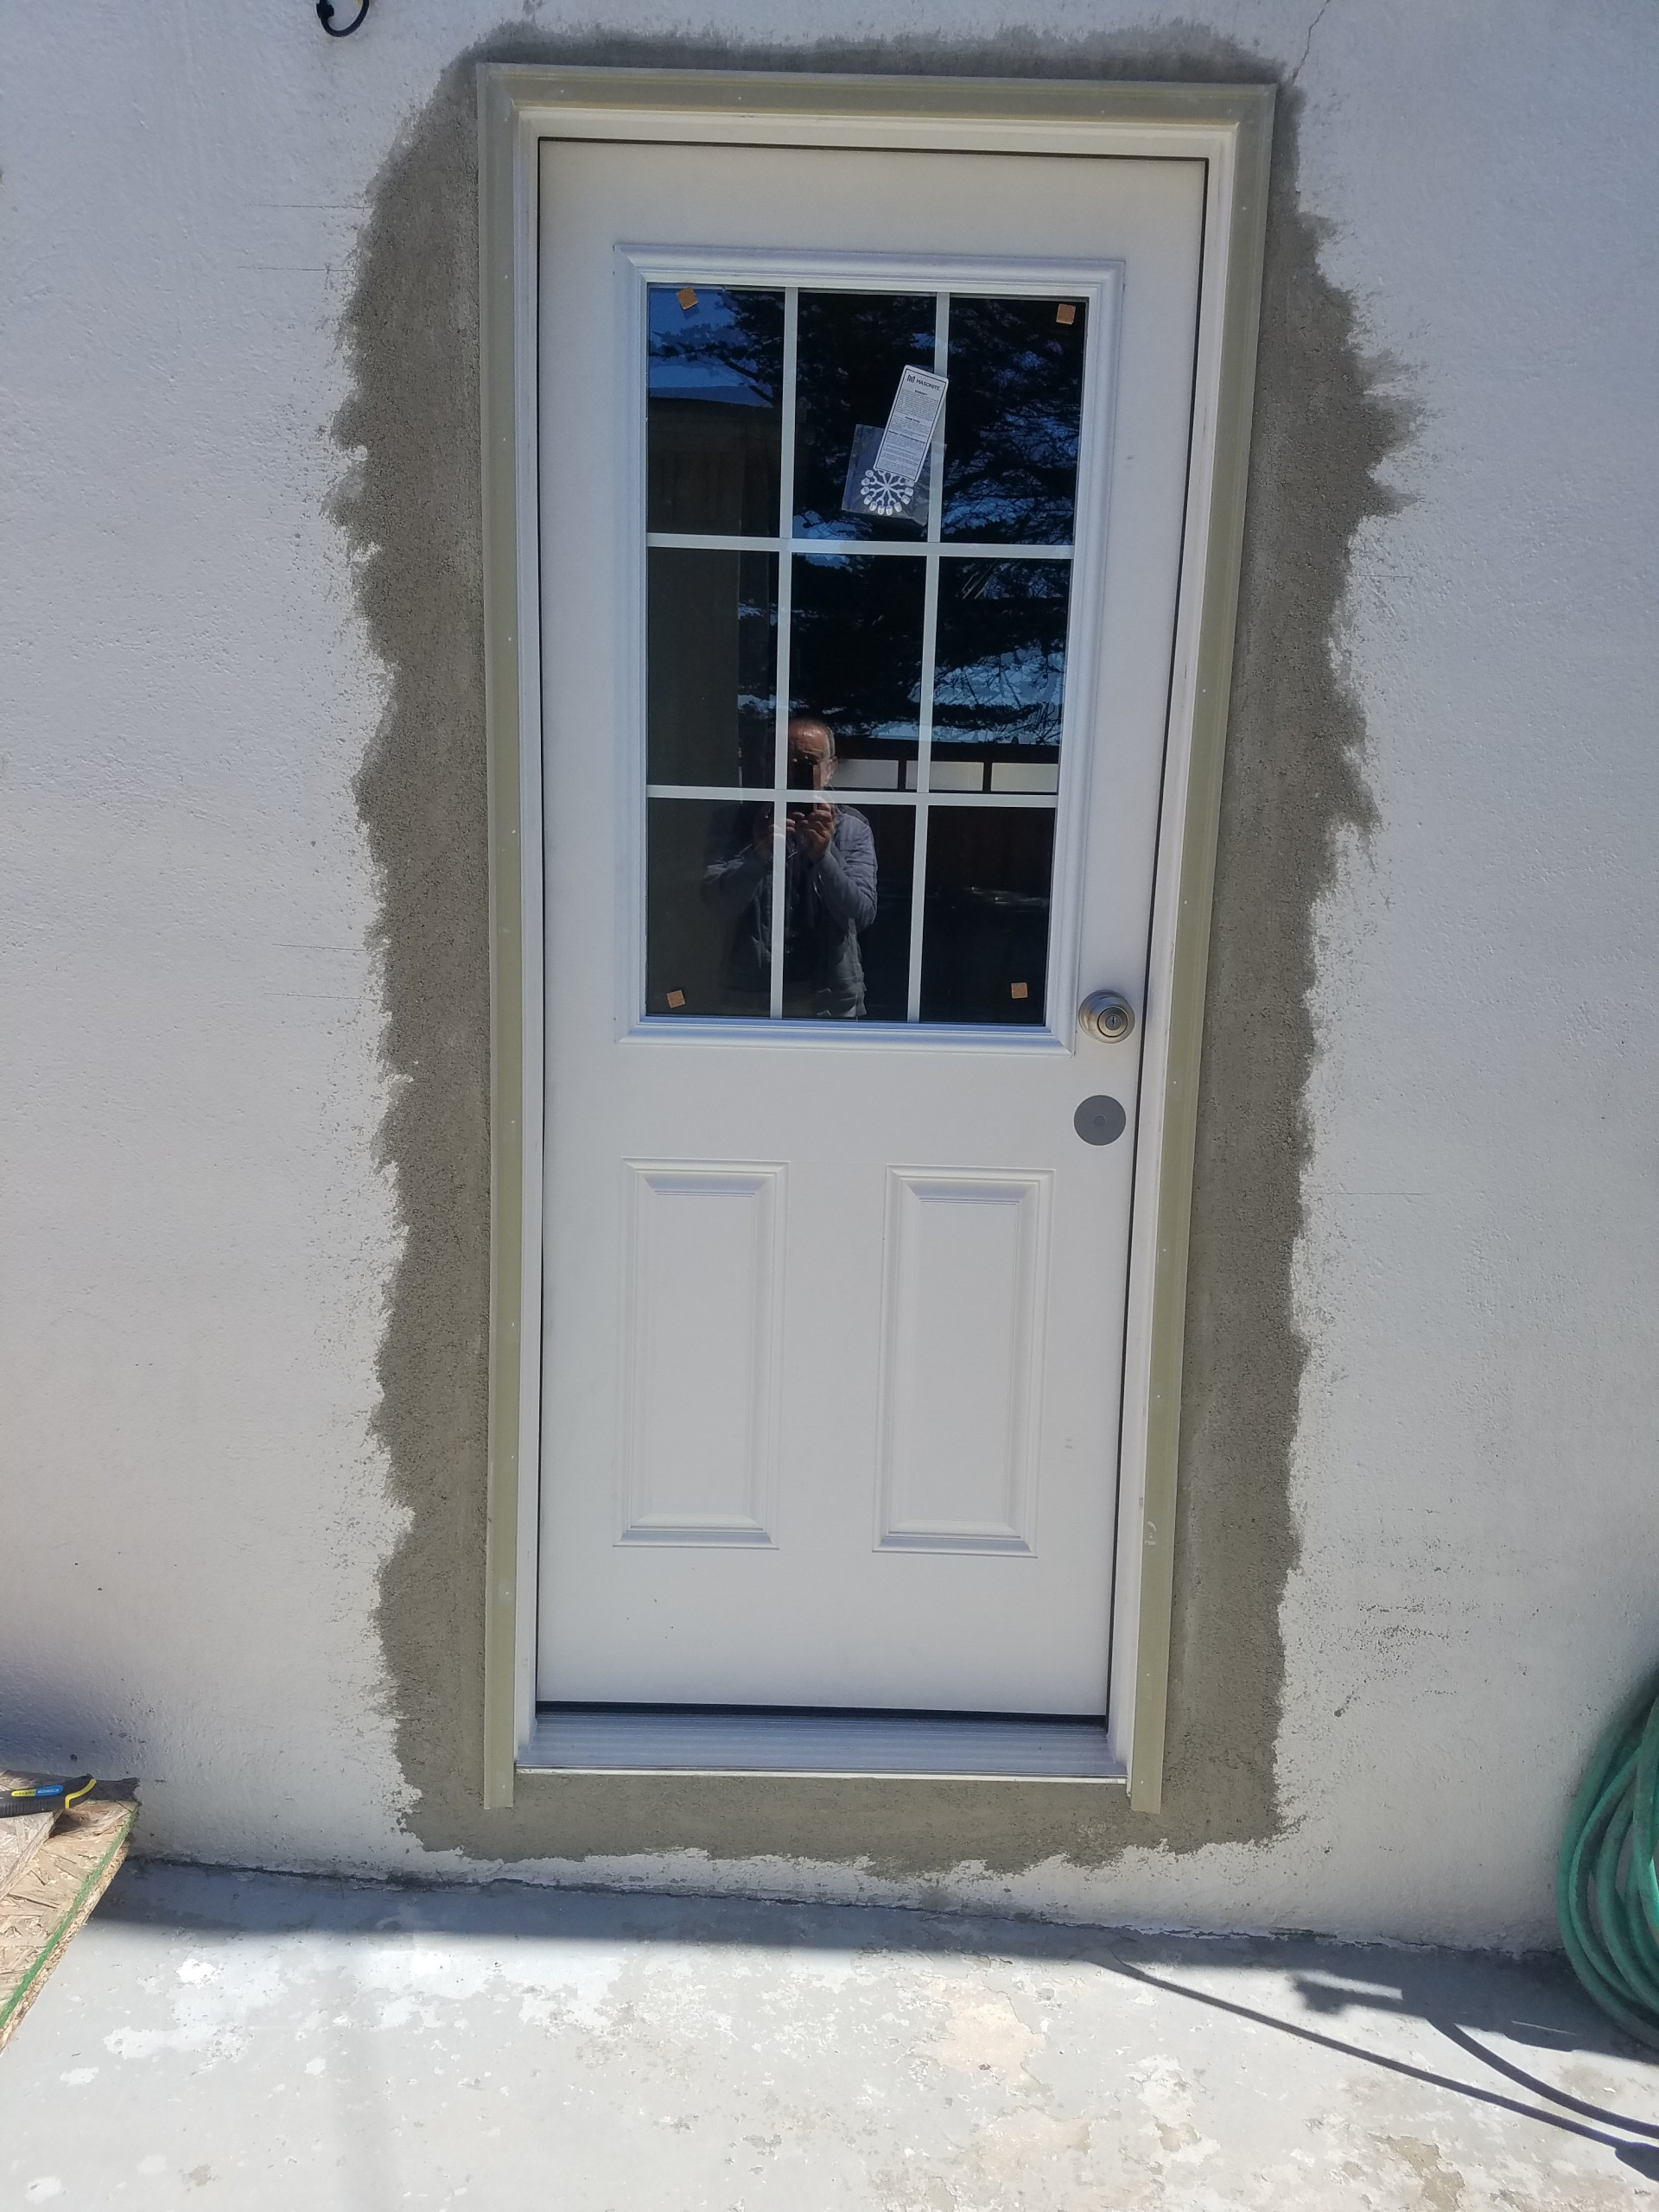 Install new door